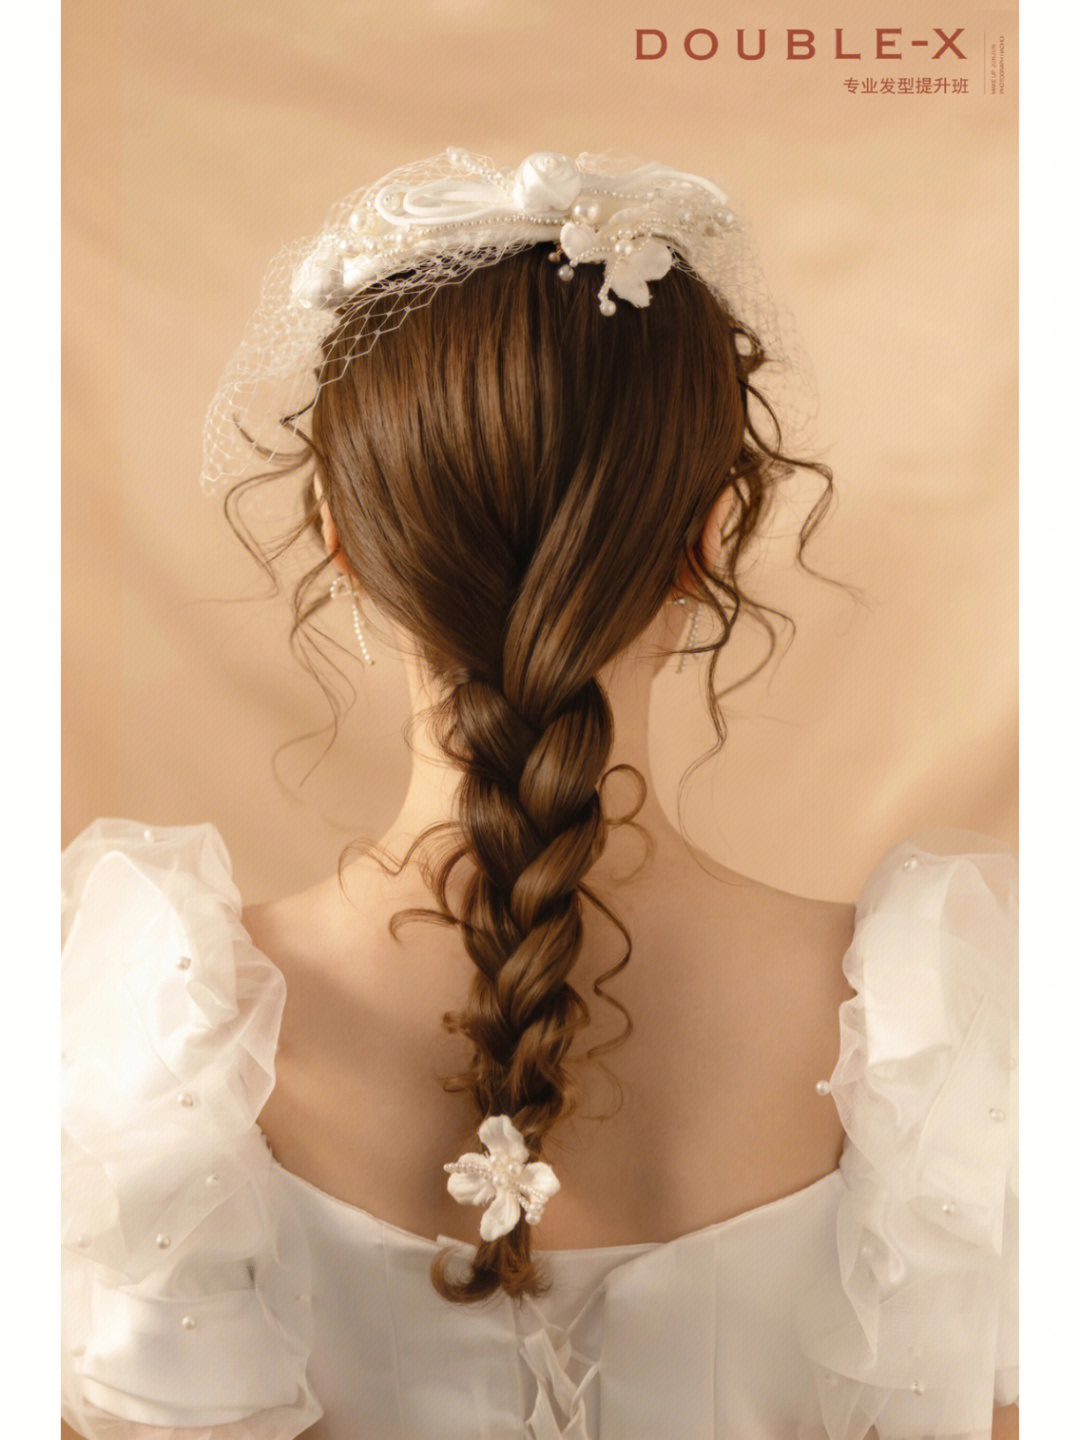 氛围感法式复古风新娘造型90蓬松q弹的发丝勾勒出发型轮廓每缕发丝